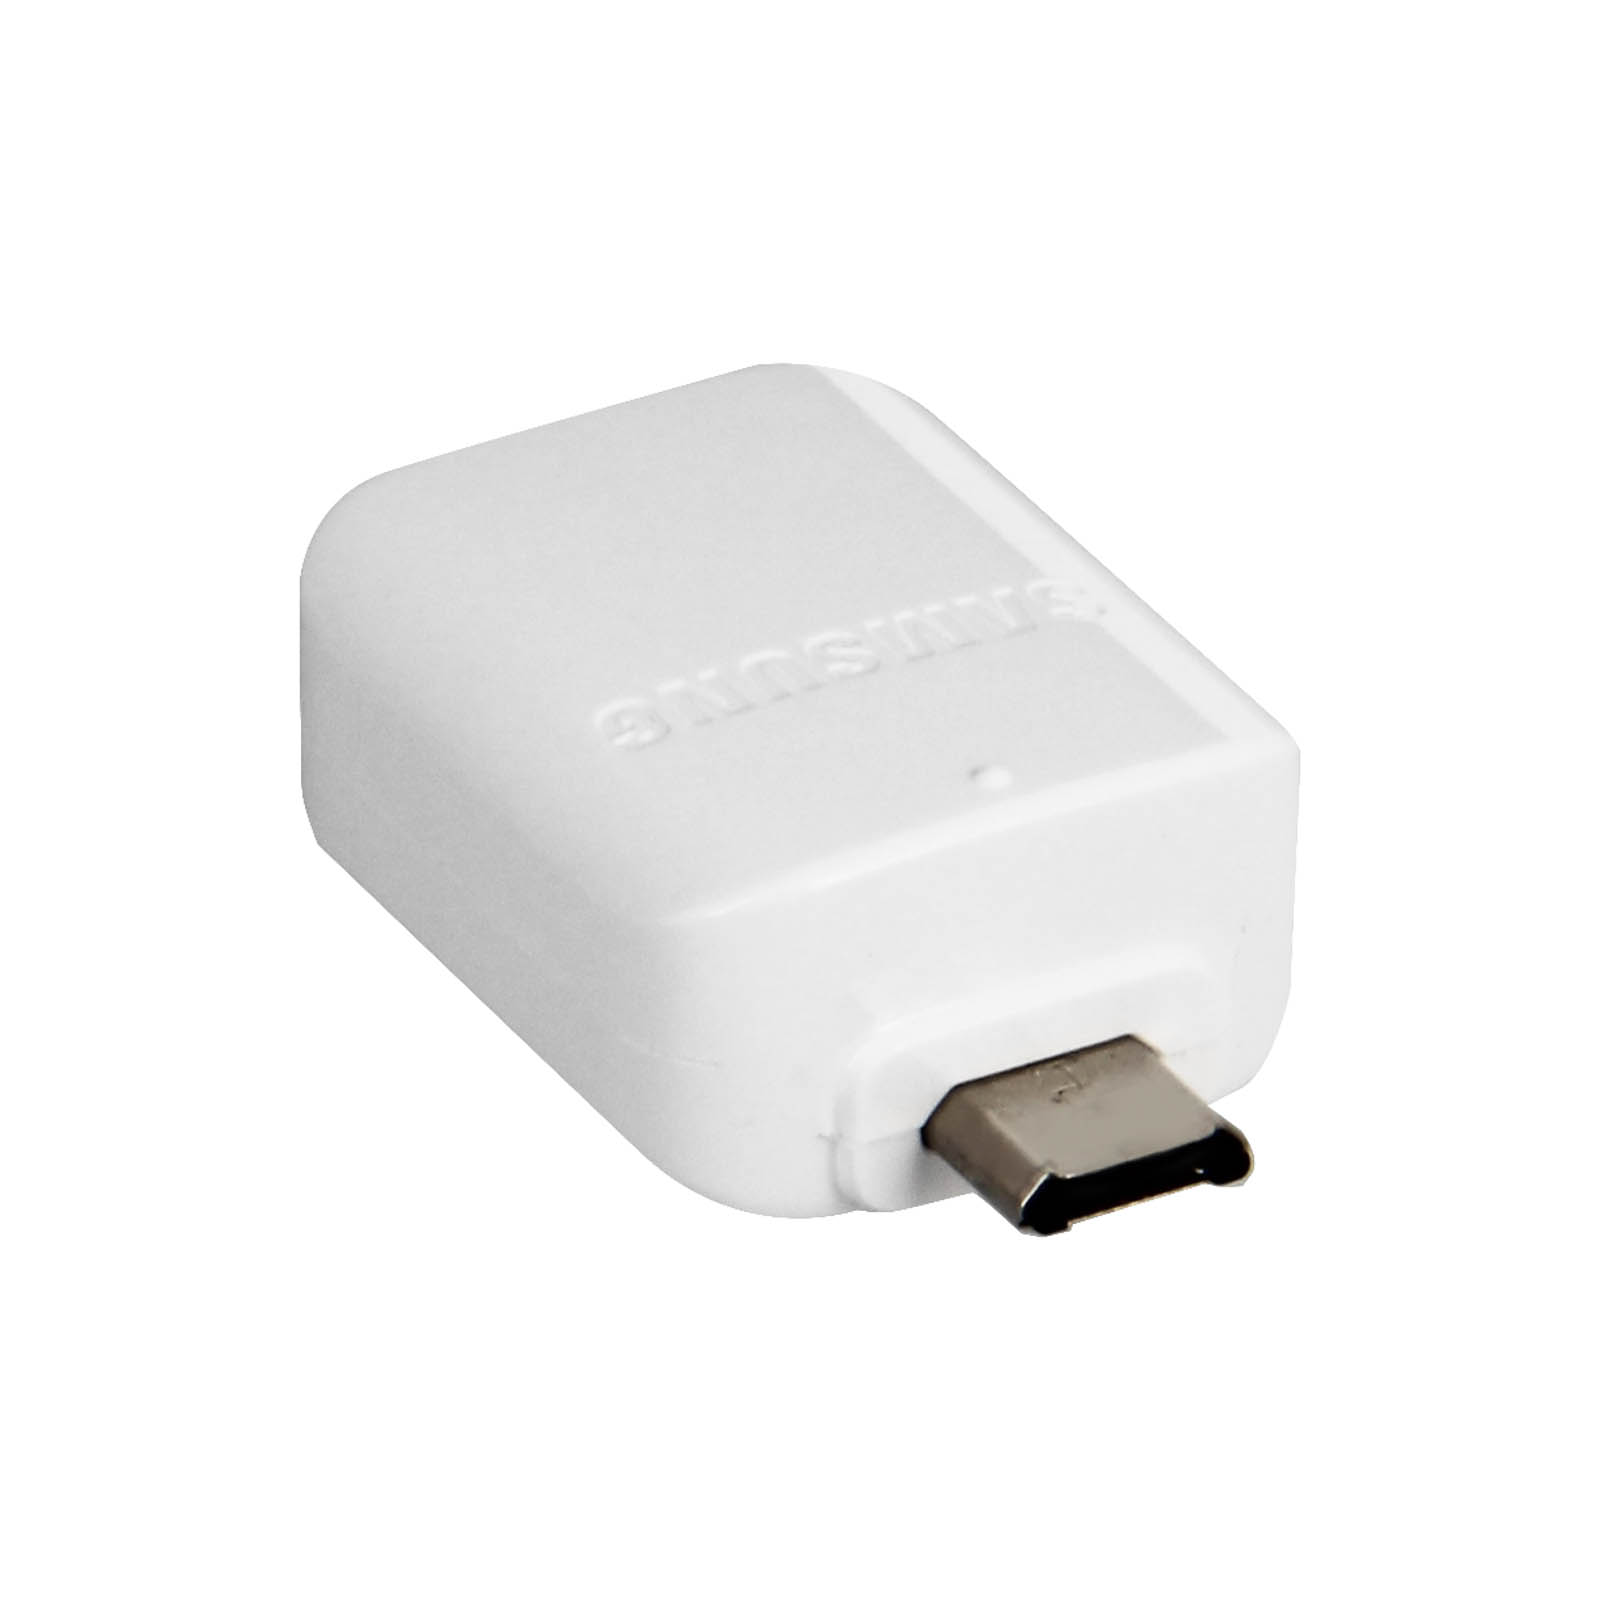 SAMSUNG EE-UG930 OTG USB-Adapter OTG Samsung, Weiß Kabeladapter